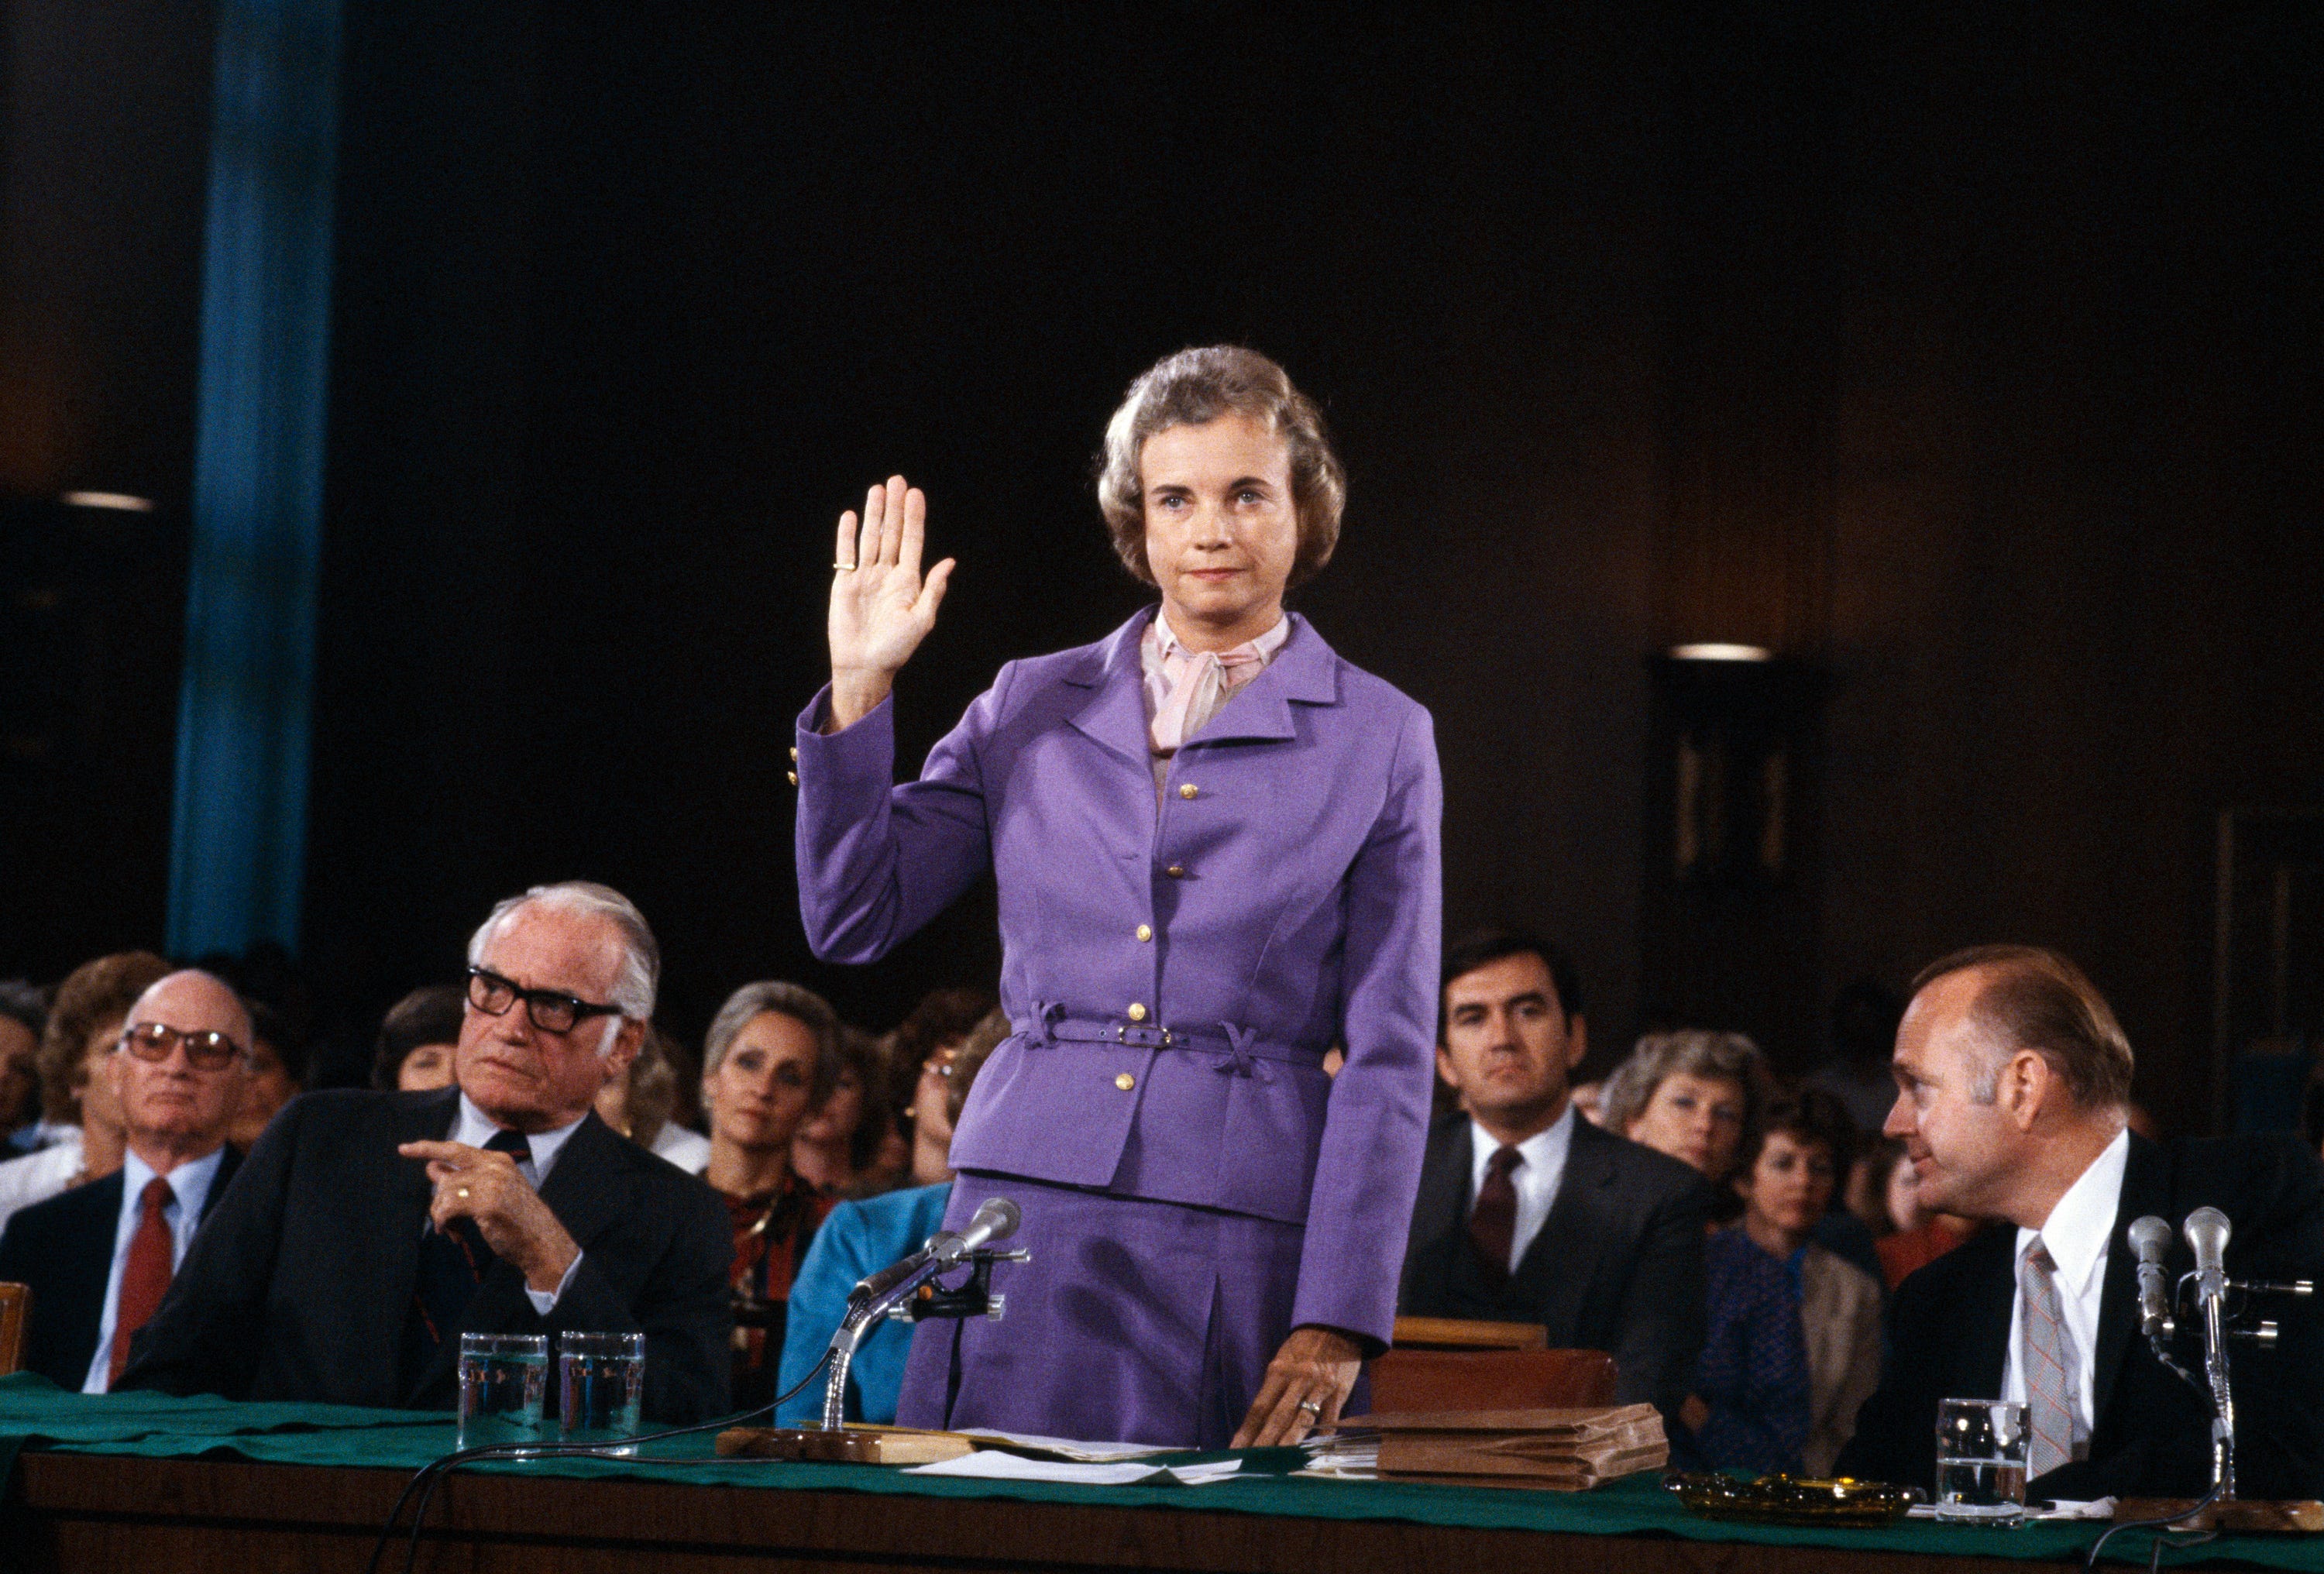 Sandra Day O'Connor wird vor dem Justizausschuss des Senats während der Anhörungen zur Bestätigung vereidigt, als sie am 9. September 1981 in Washington, D.C. als erste Frau einen Sitz am Obersten Gerichtshof der USA einnehmen will.